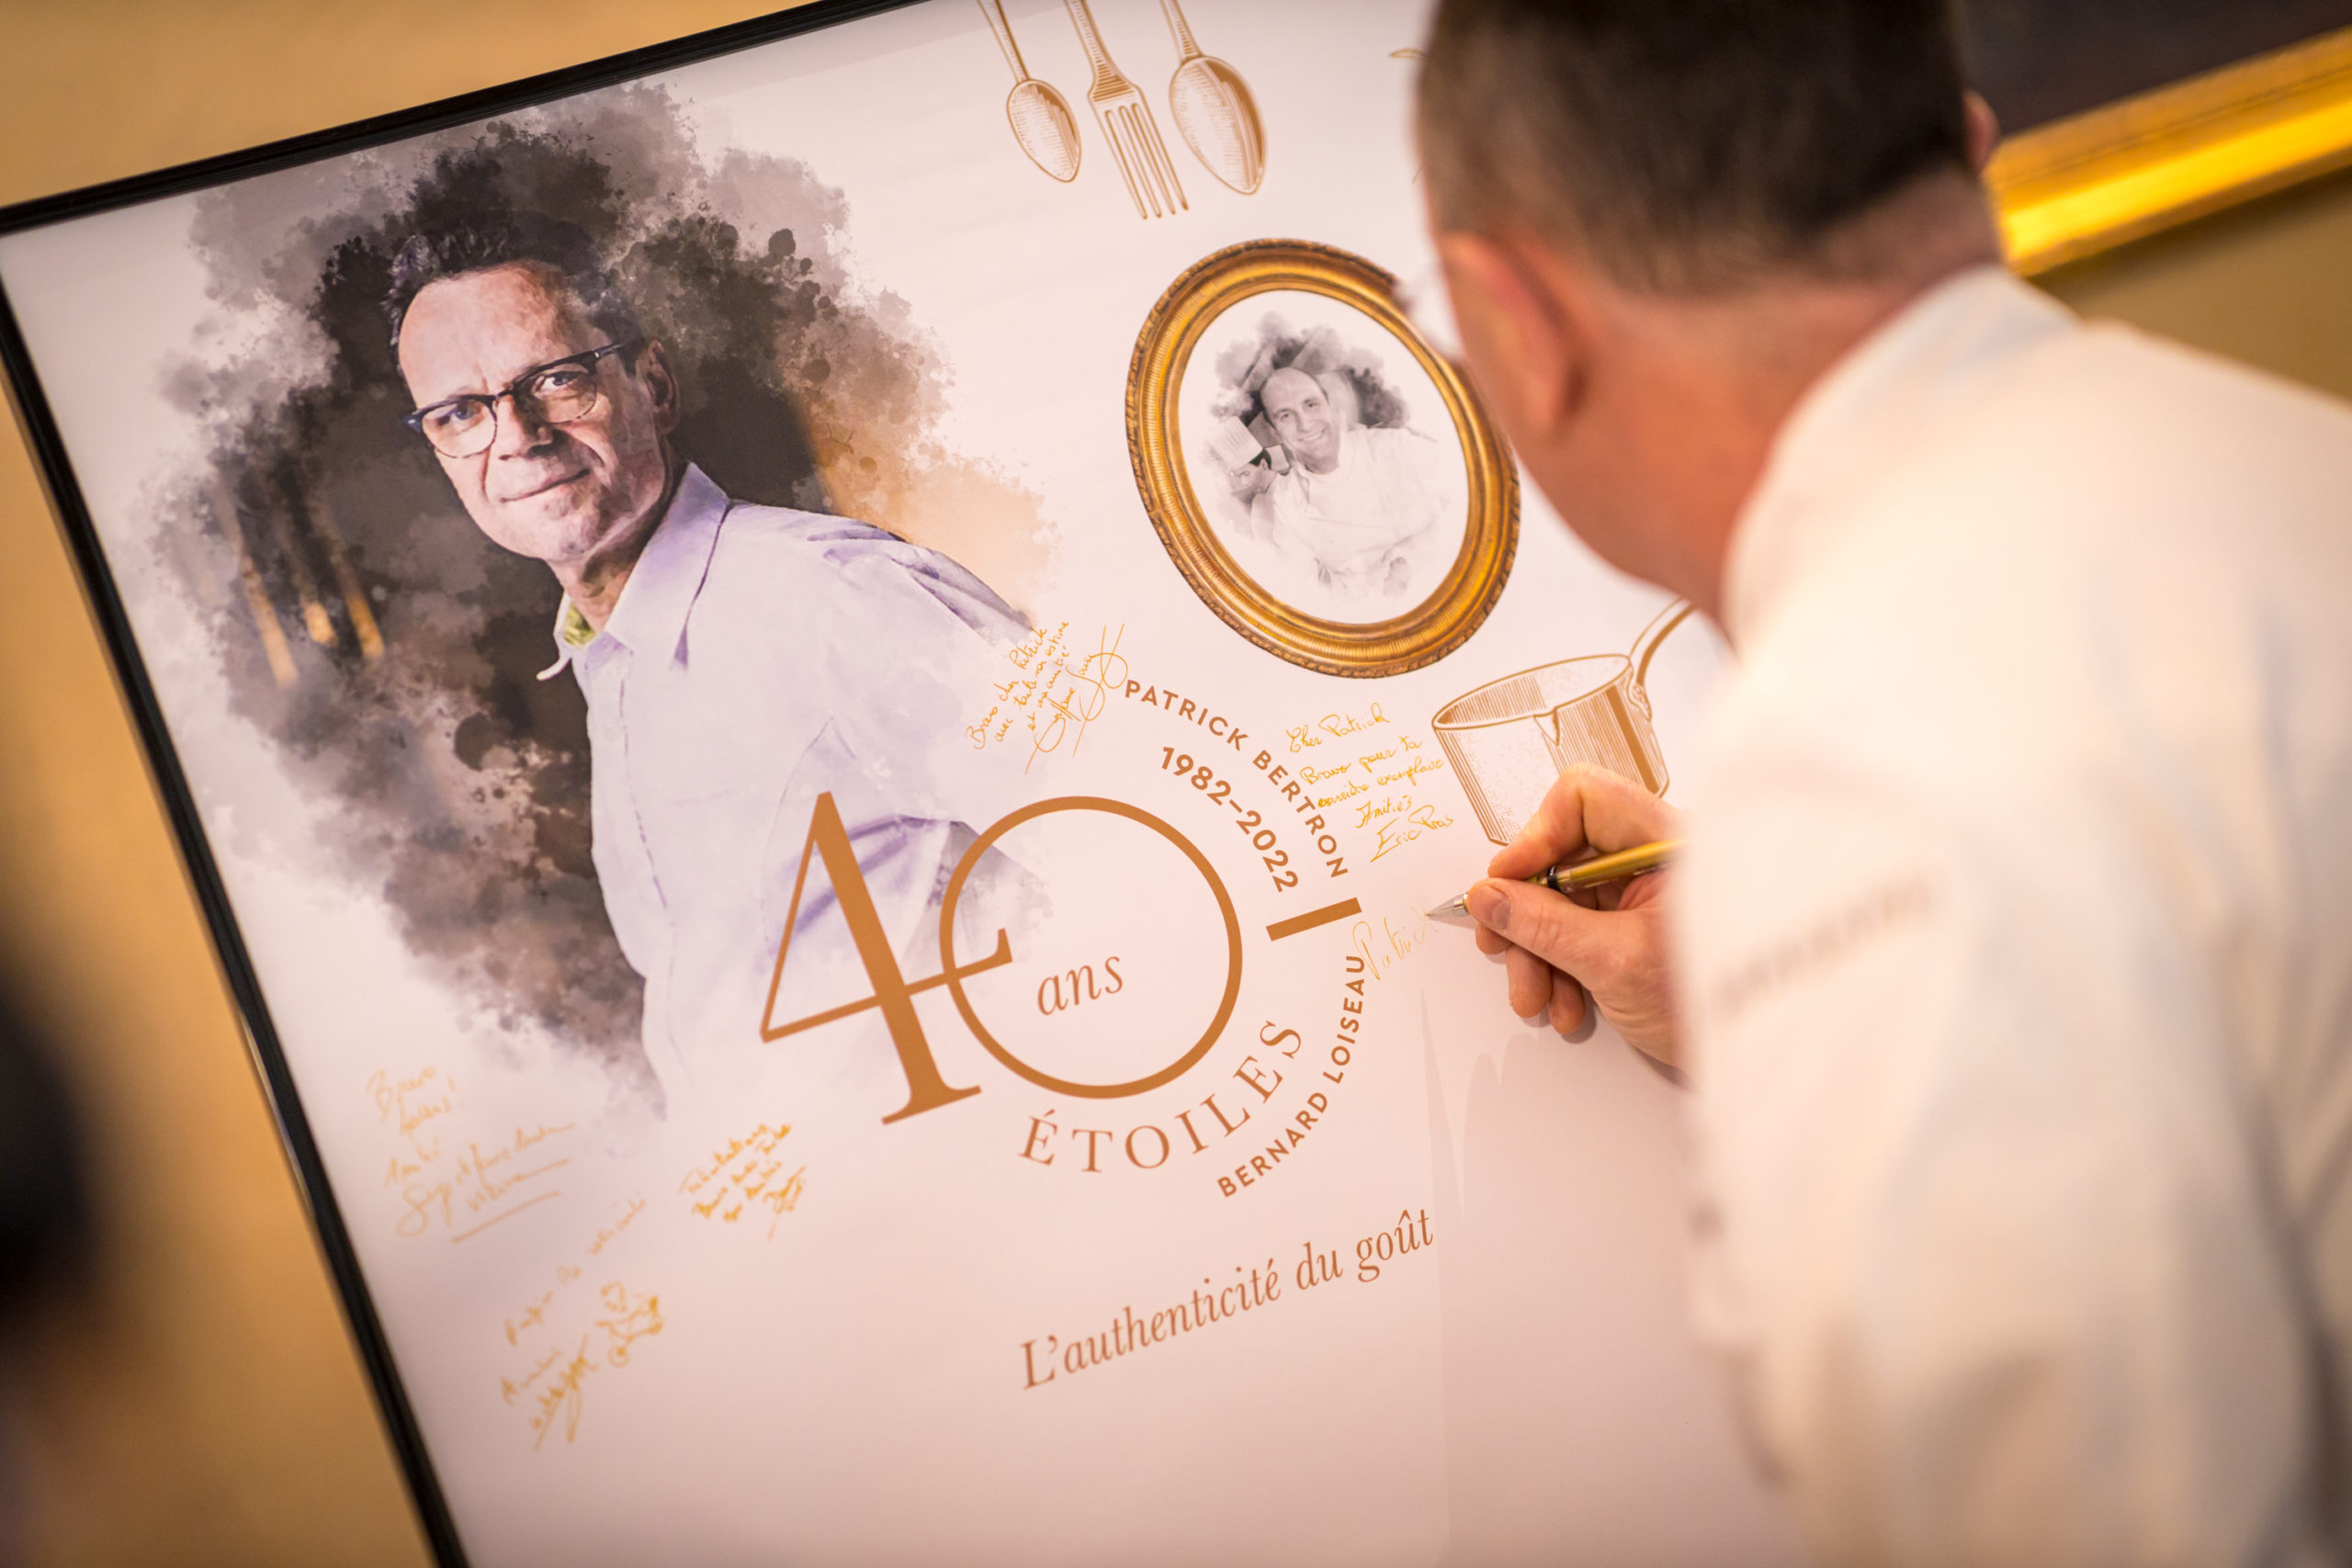 40 chefs étoilés venus saluer les 40 ans de Patrick Bertron dans la Maison Loiseau, mardi 29 mars. (RELAIS BERNARD LOISEAU / GREGORY-GIRARD)